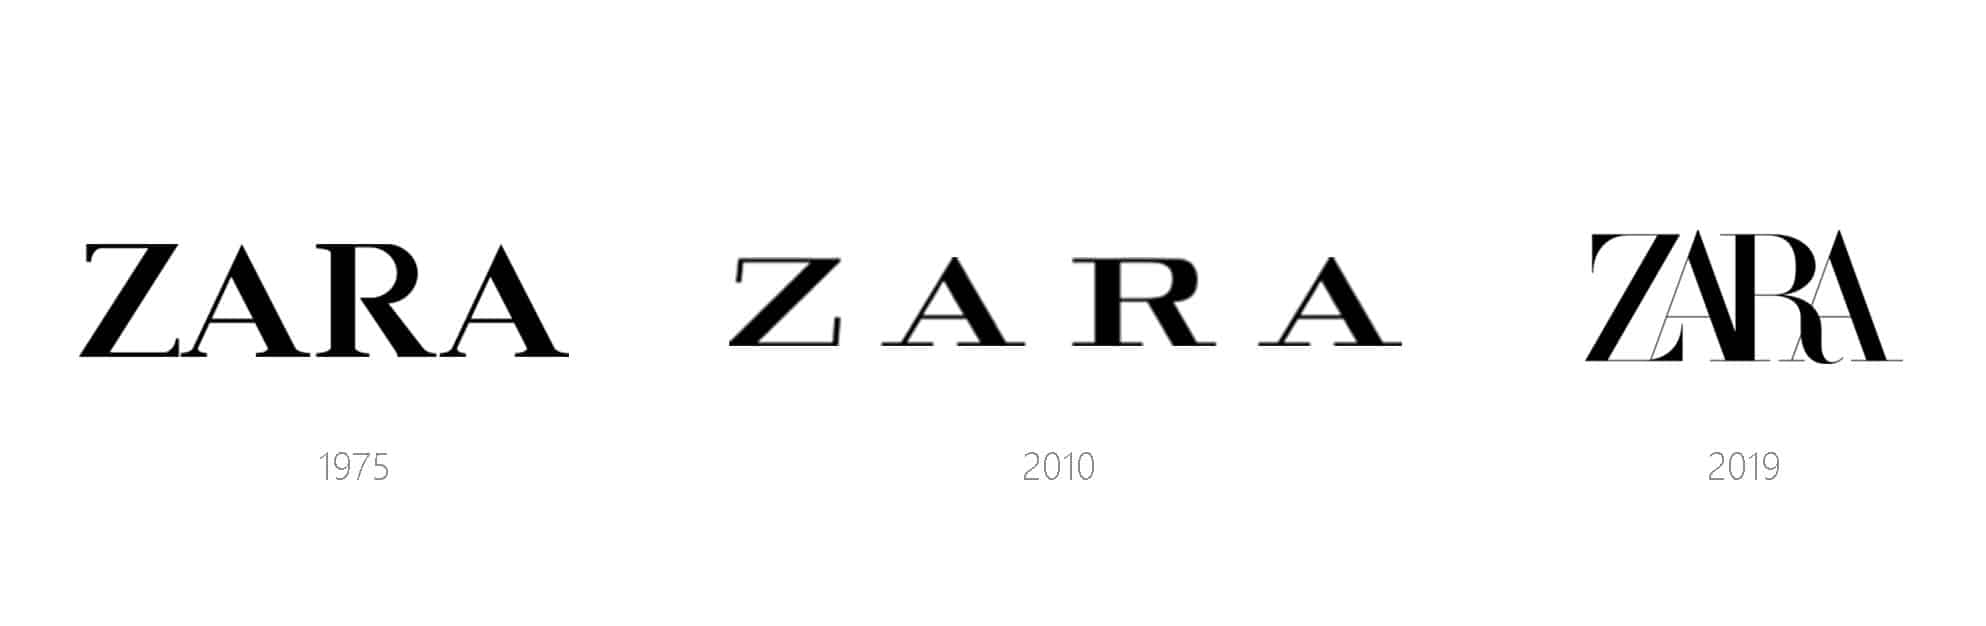 服装 快时尚品牌Zara更新了LOGO 2